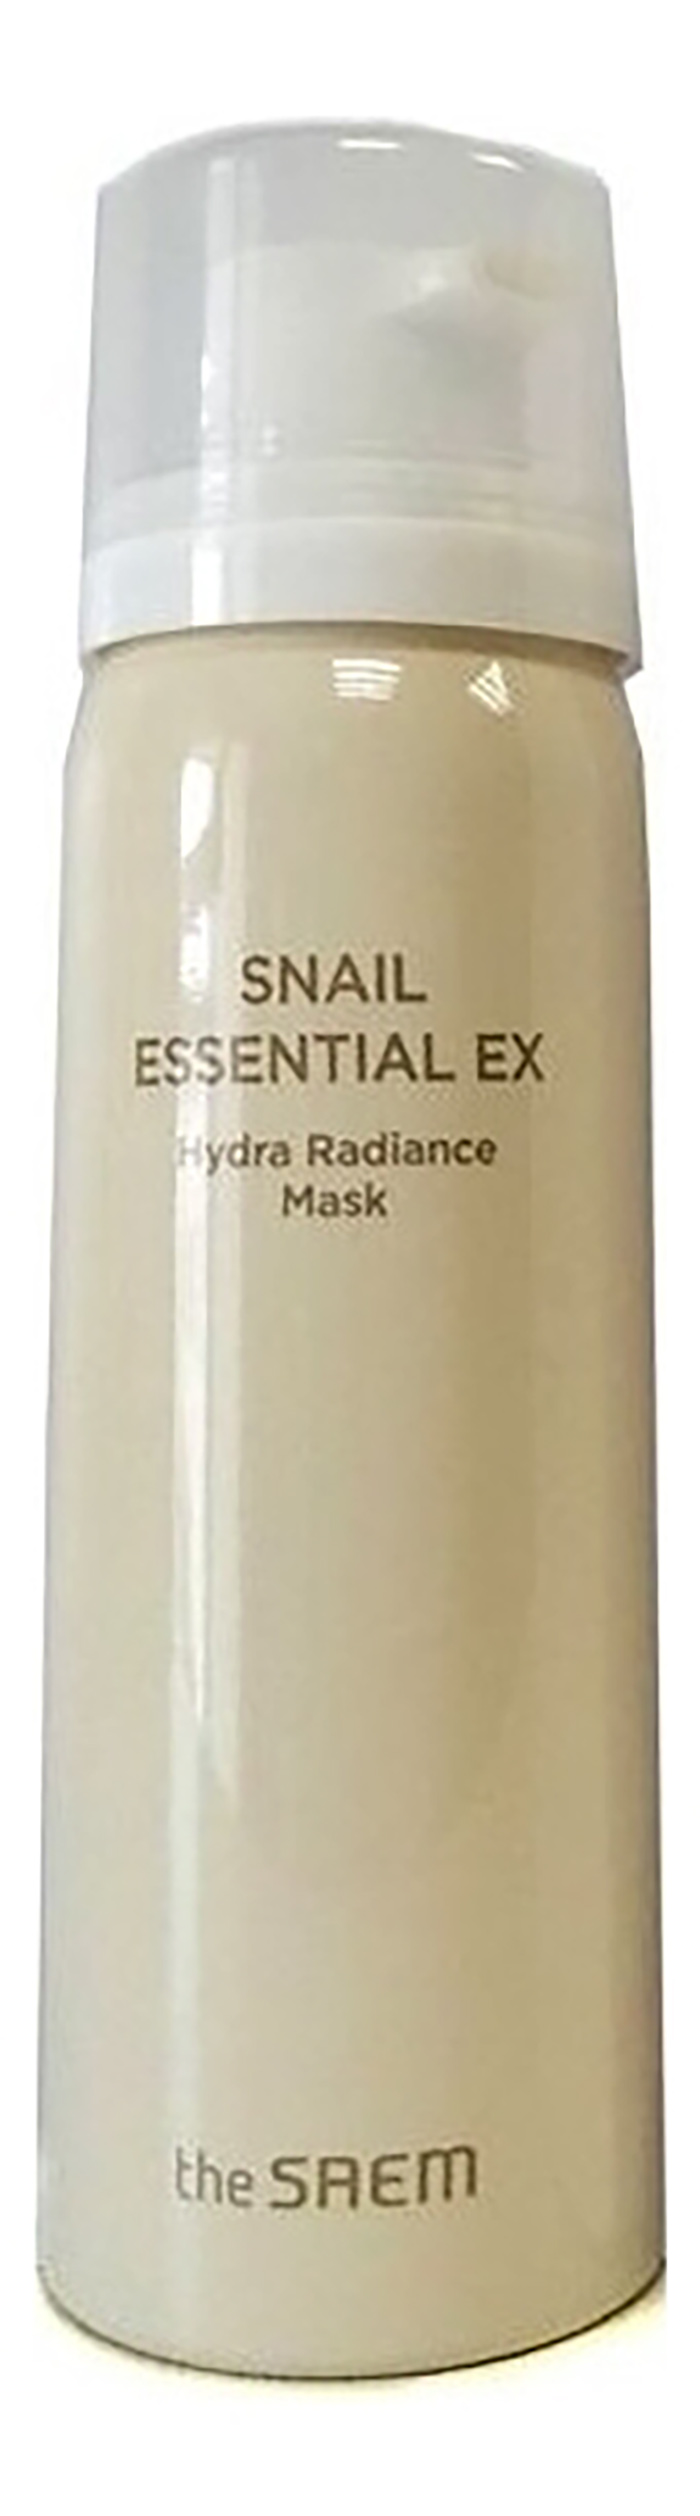 Маска для лица The Saem Snail Essential Ex Hydra Radiance Mask 80 мл